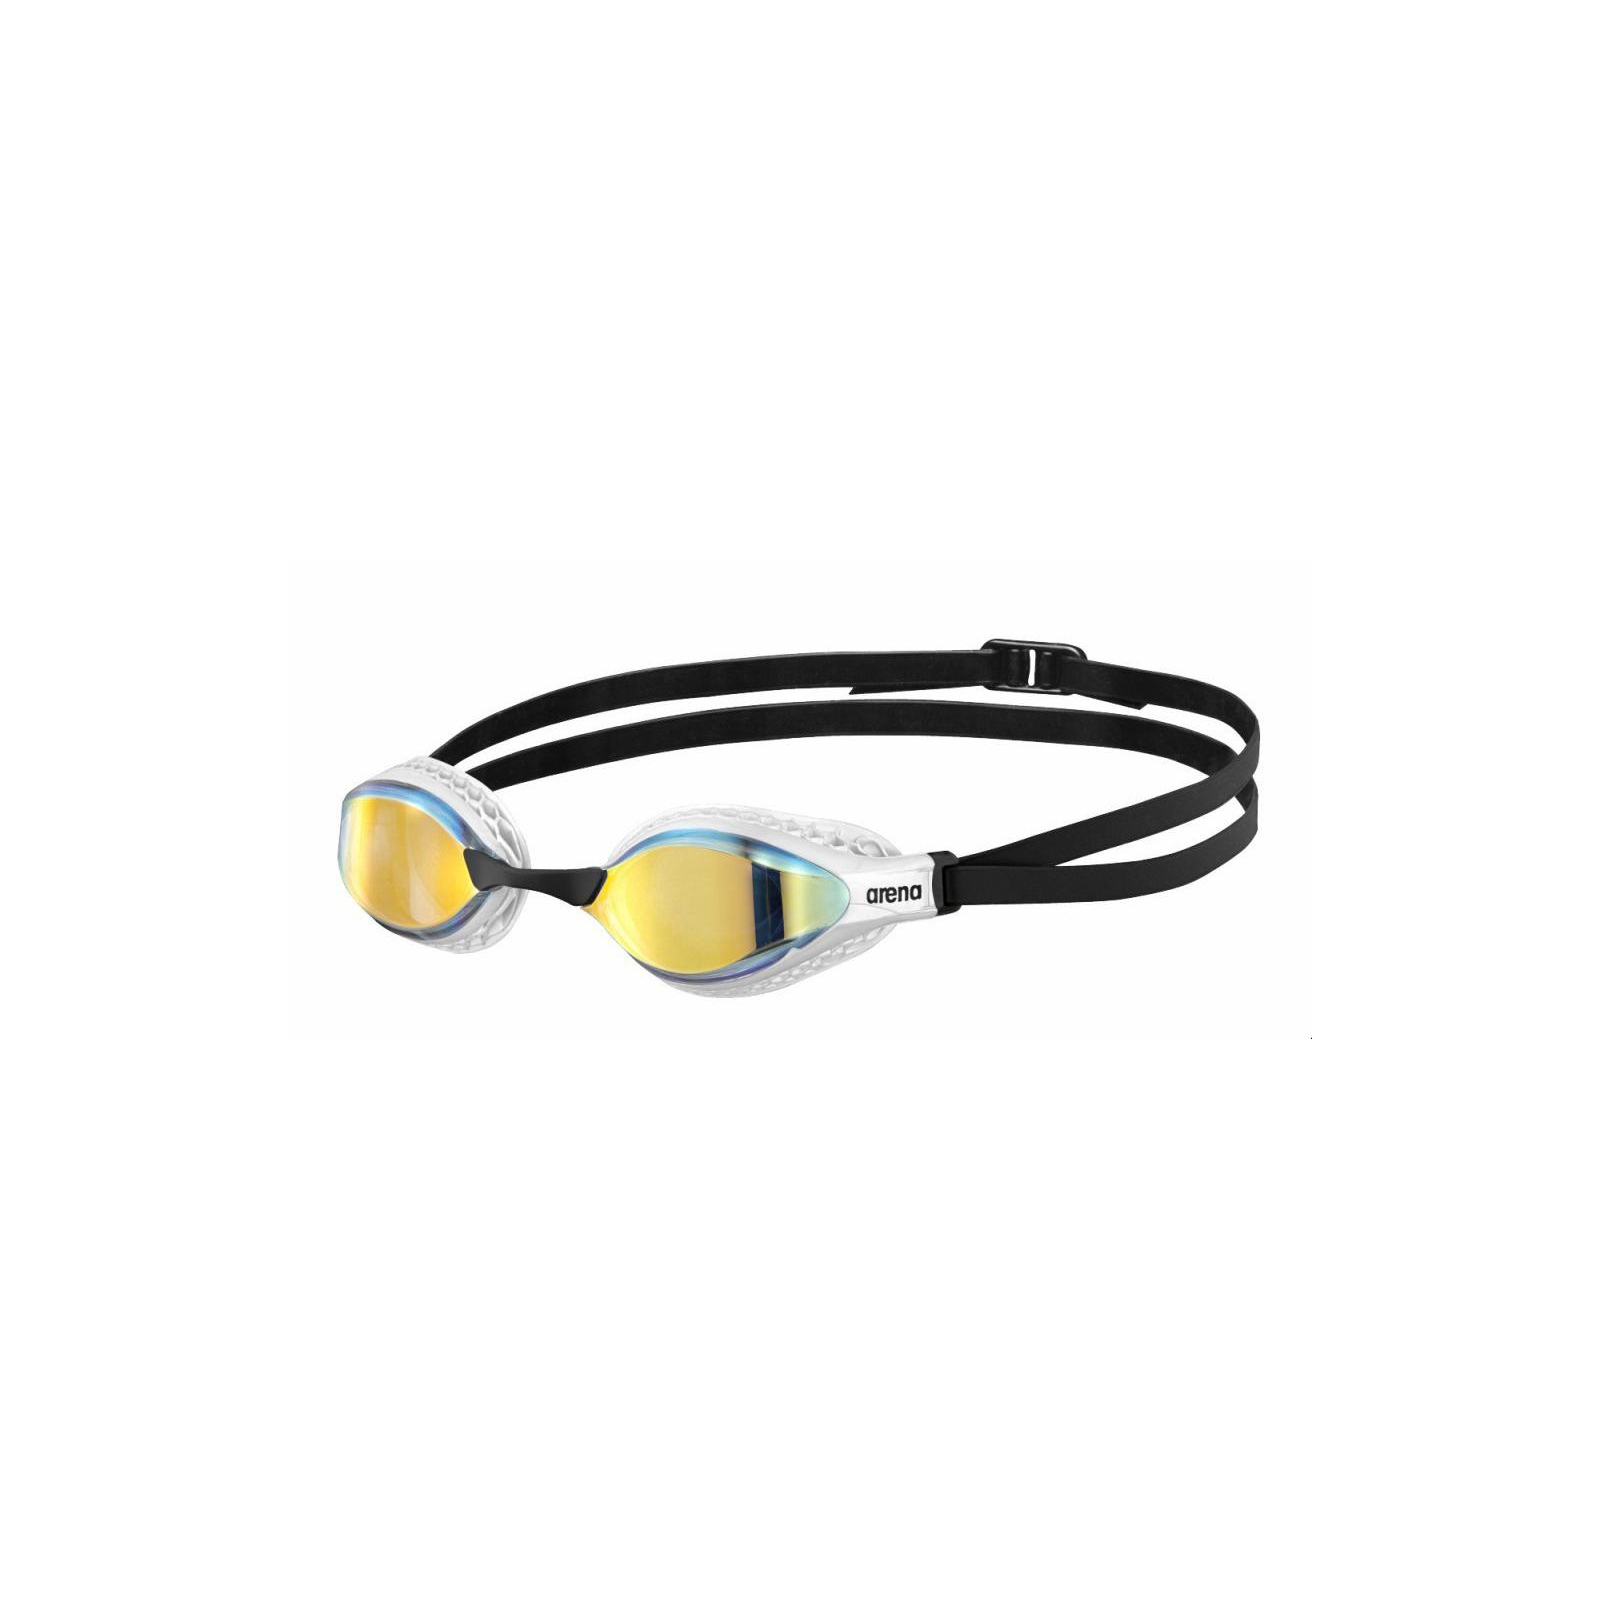 Окуляри для плавання Arena Air-Speed Mirror 003151-202 жовтий, мідно-білий OSFM (3468336362778)